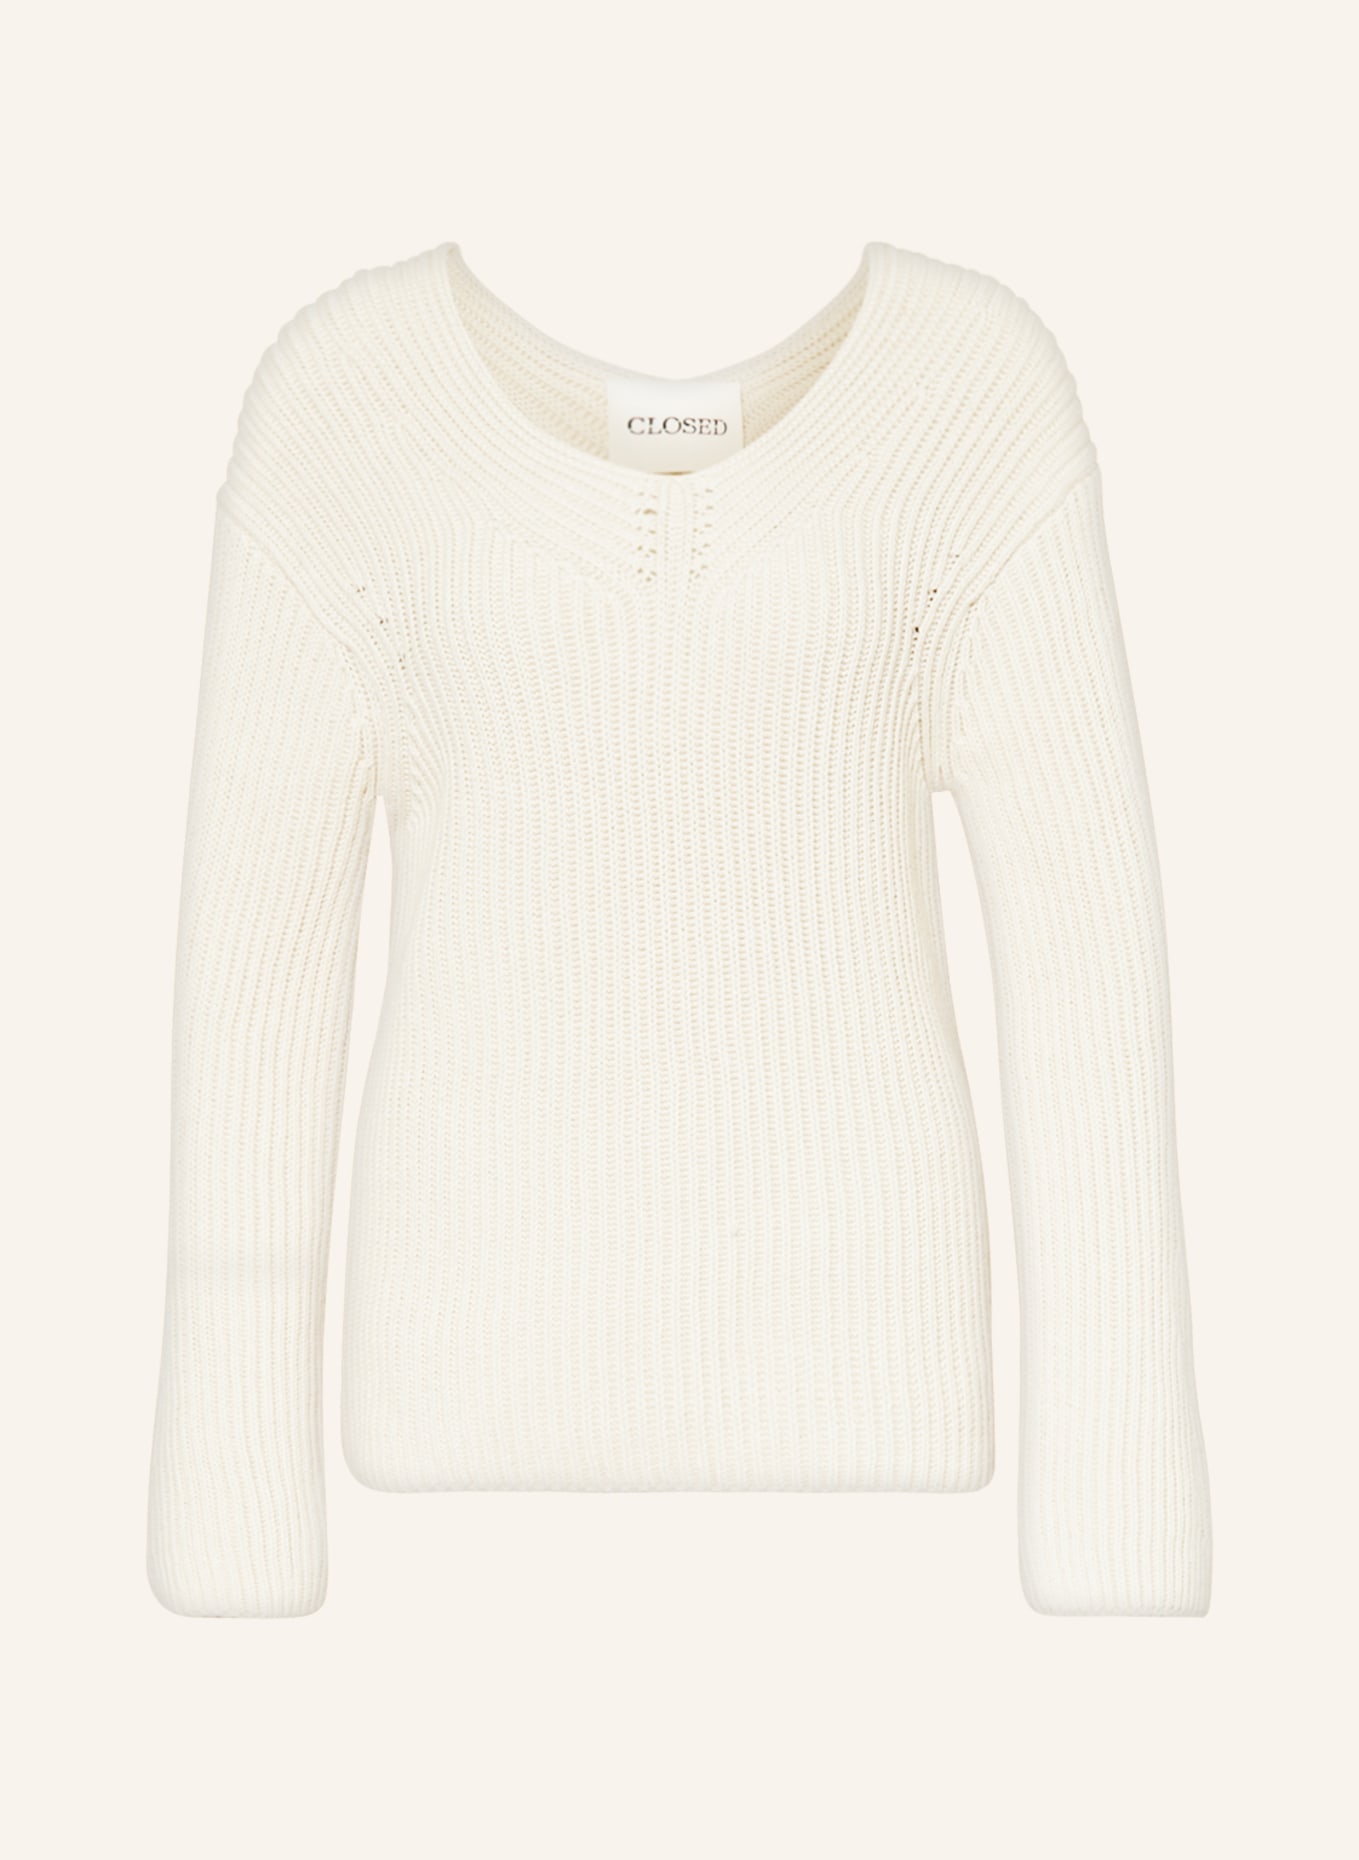 CLOSED Sweater, Color: ECRU (Image 1)